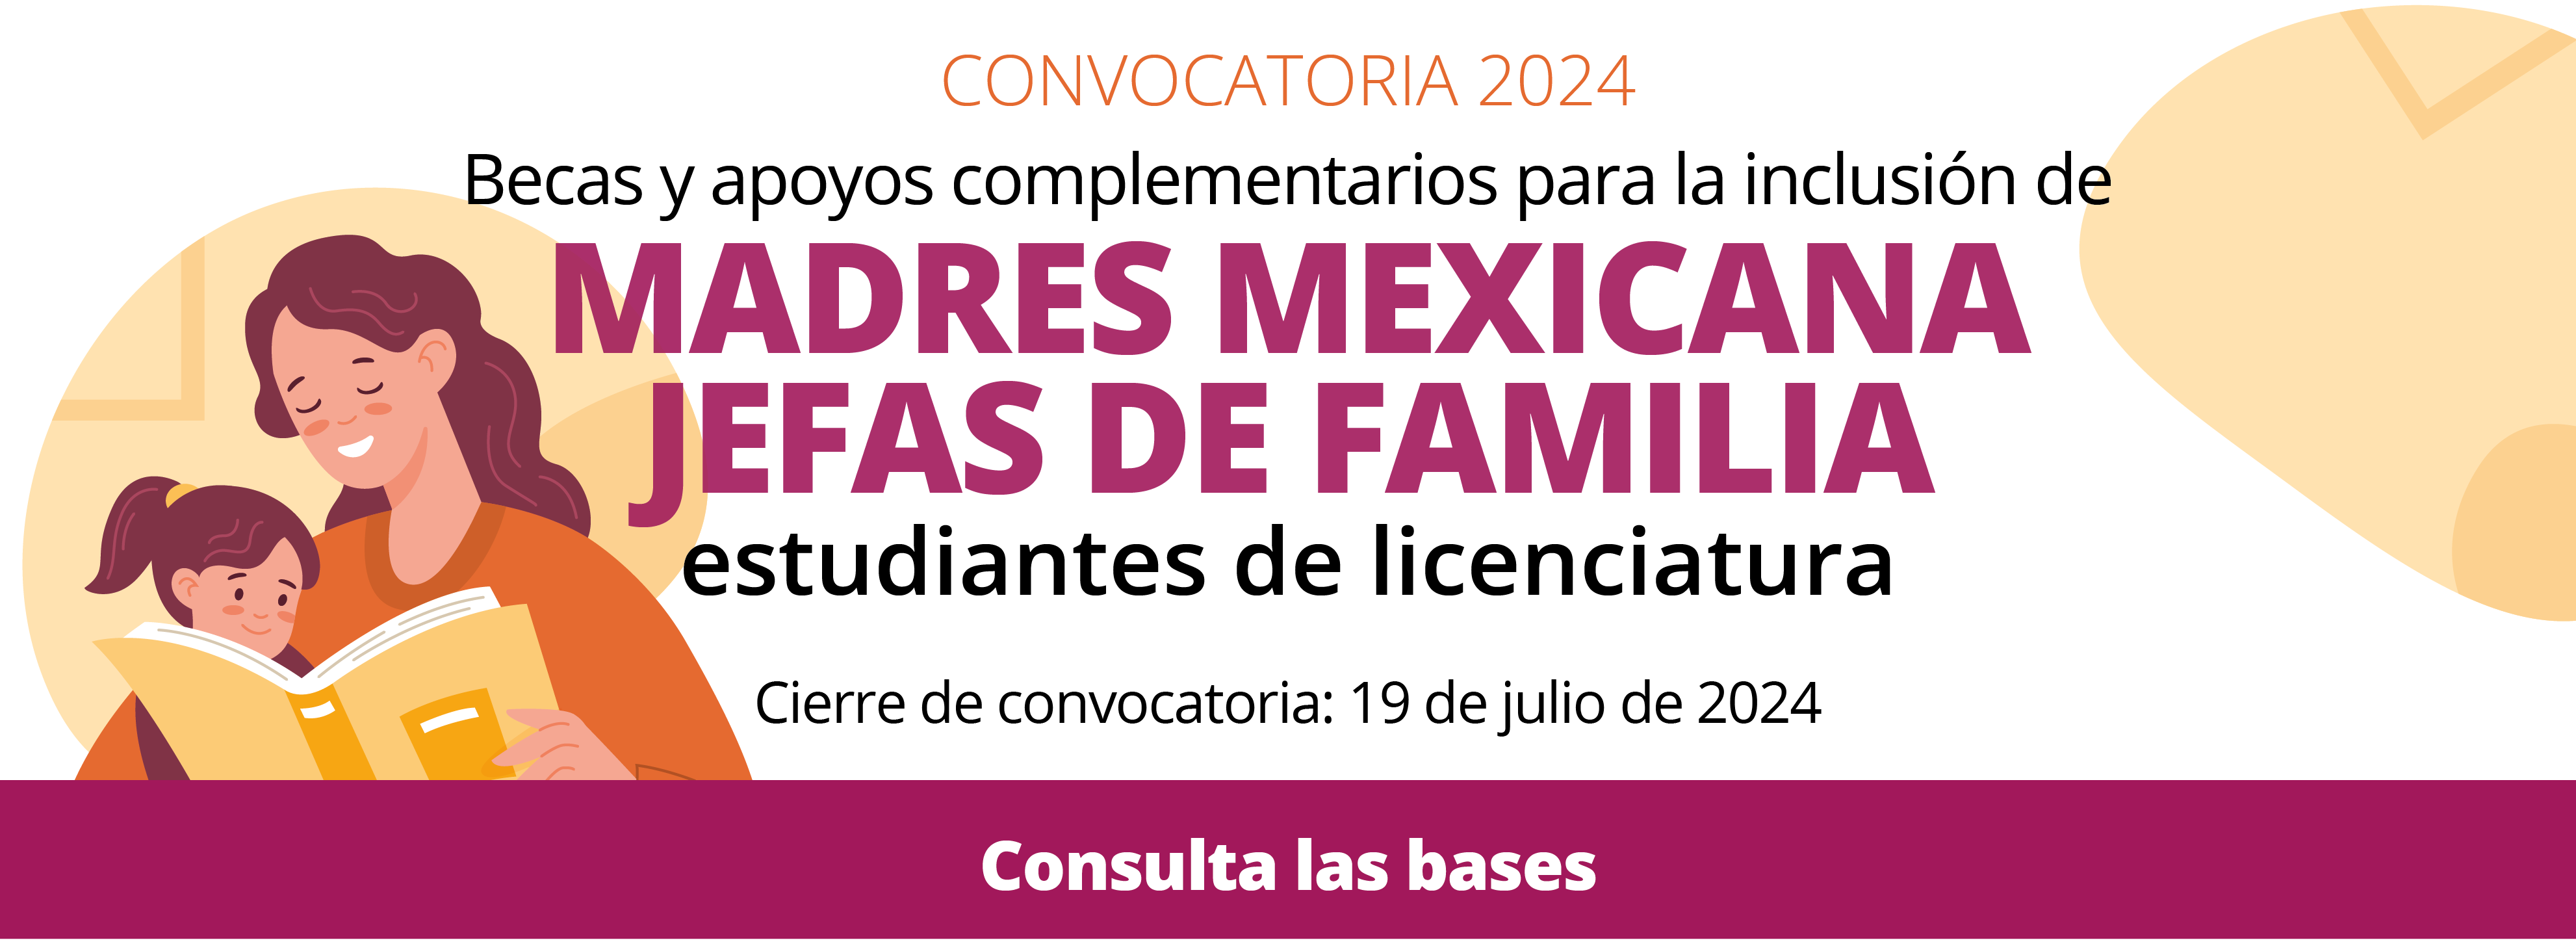 Convocatoria_Becas_y_apoyos_Madres_de_familia_licenciatura_2024_banner_web